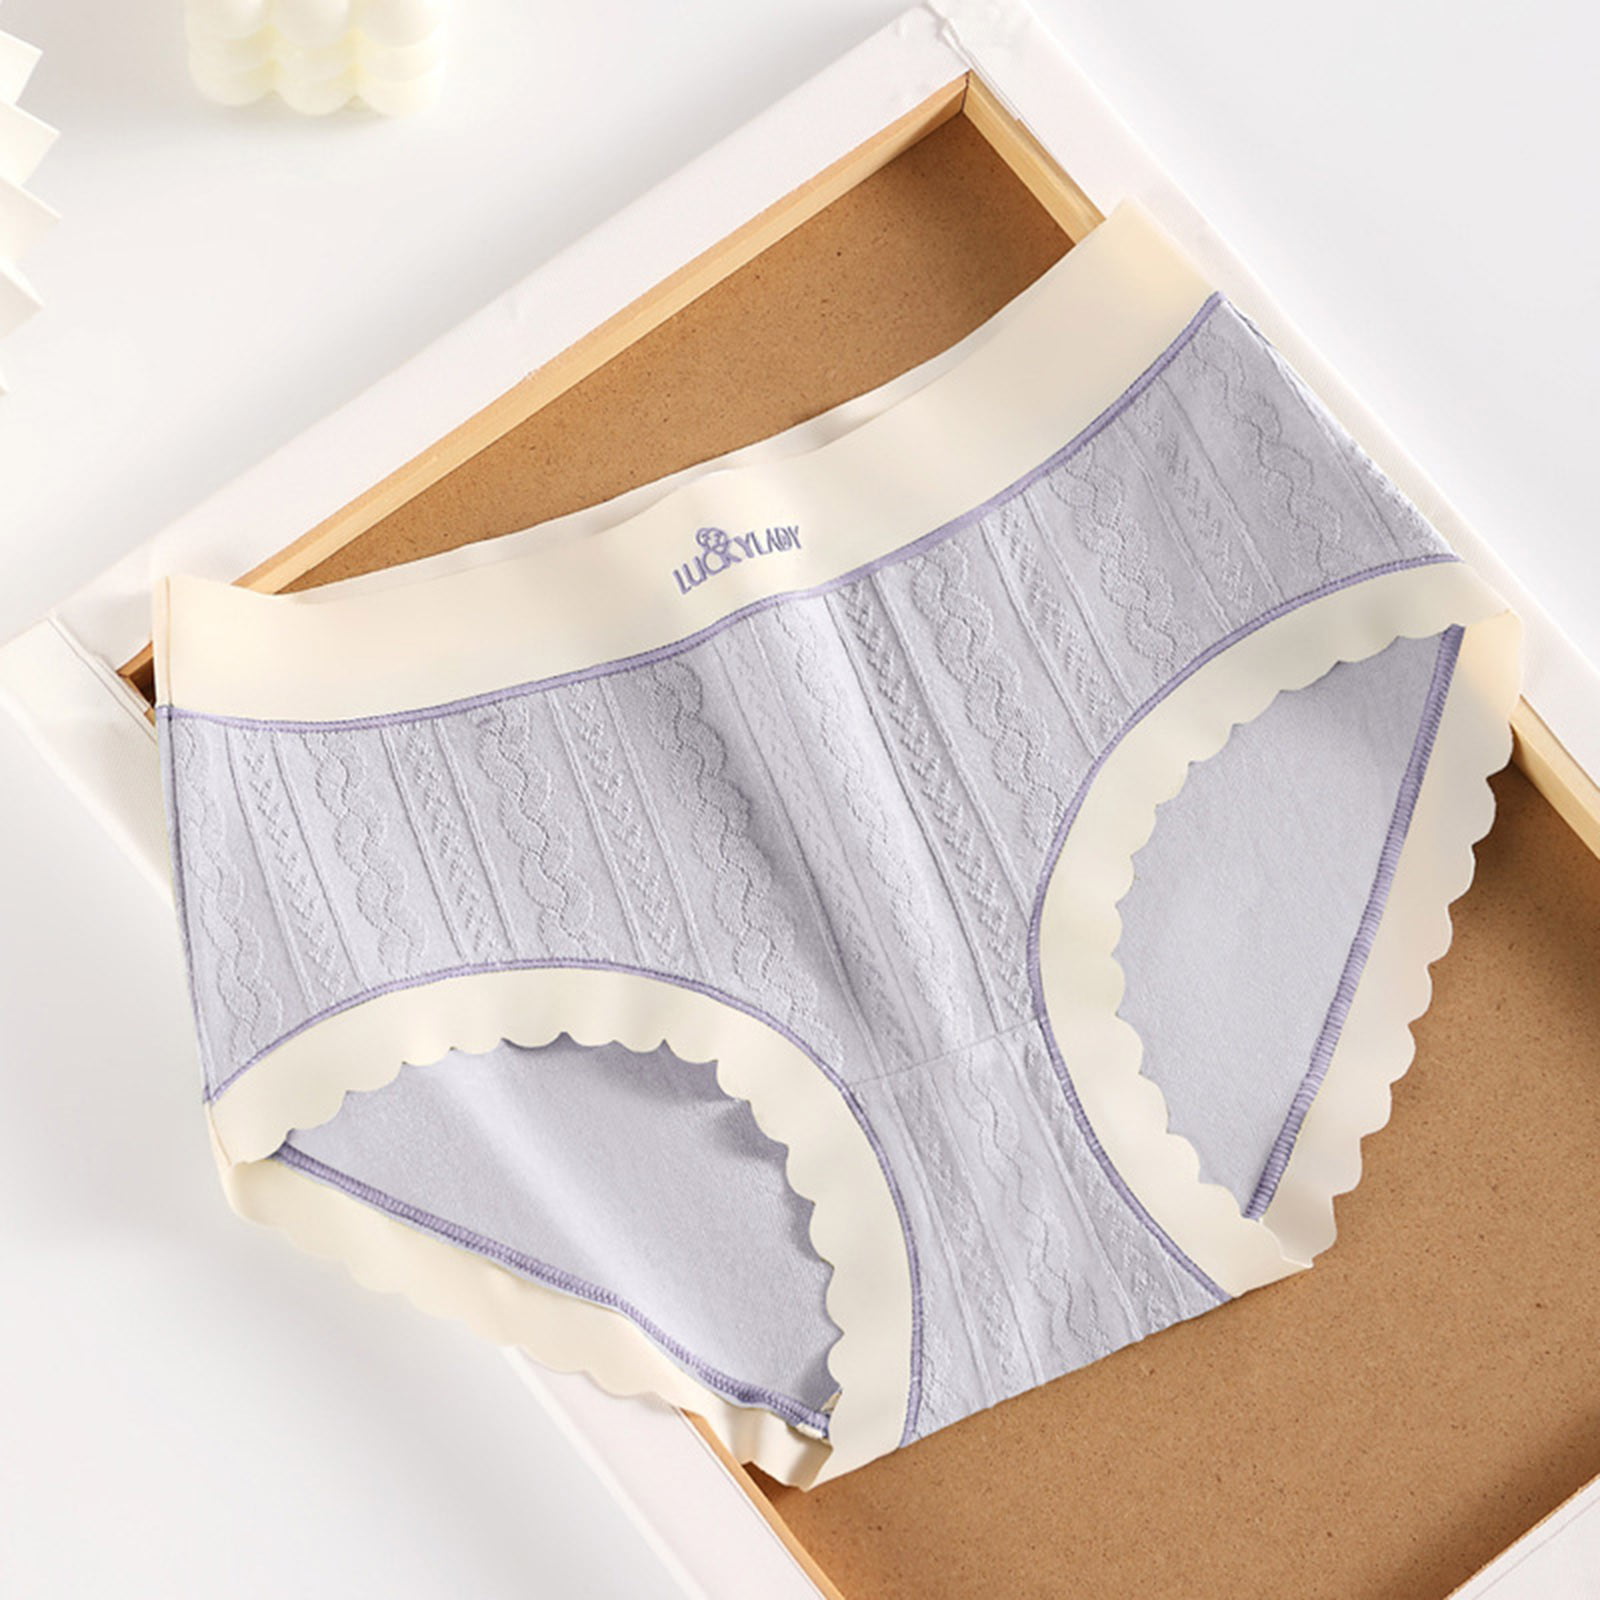 eczipvz Cotton Underwear for Women Waist Of Pure Cotton Underwear Women  Comfortable Breathable Bottom Fork Girls Briefs B,5XL